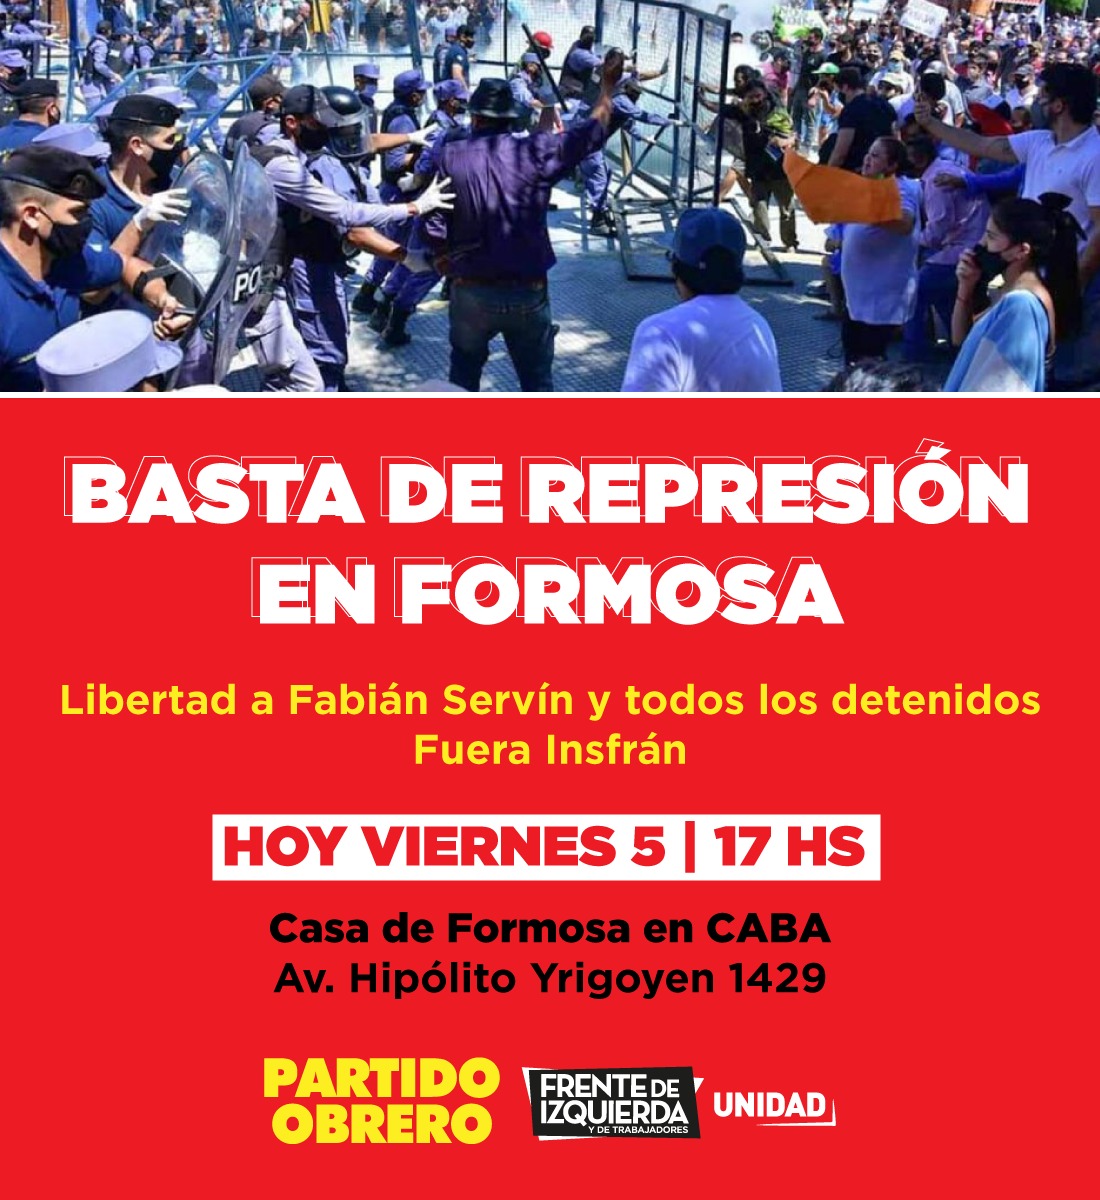 [Urgente] 17h, concentración frente a la Casa de Formosa en CABA (Av. H. Yrigoyen 1429)